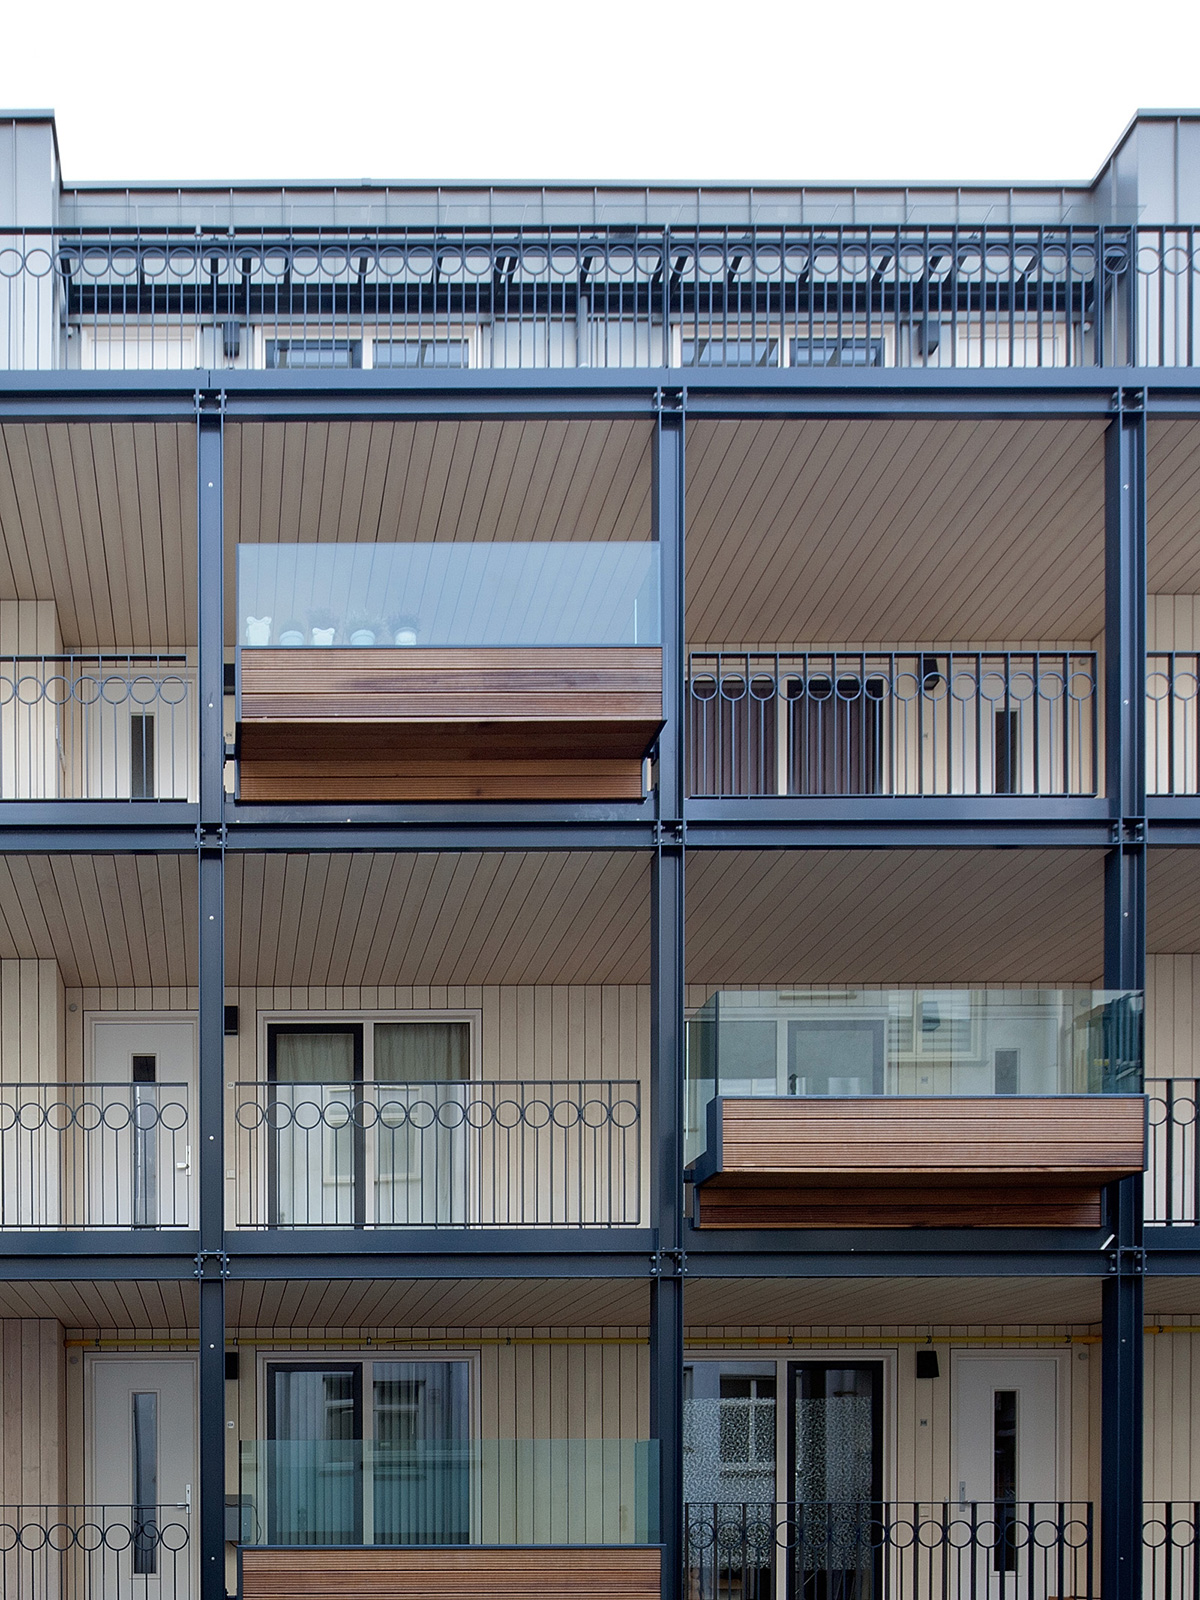 hparchitecten_Govert-Flinck-Achterkant-balkon